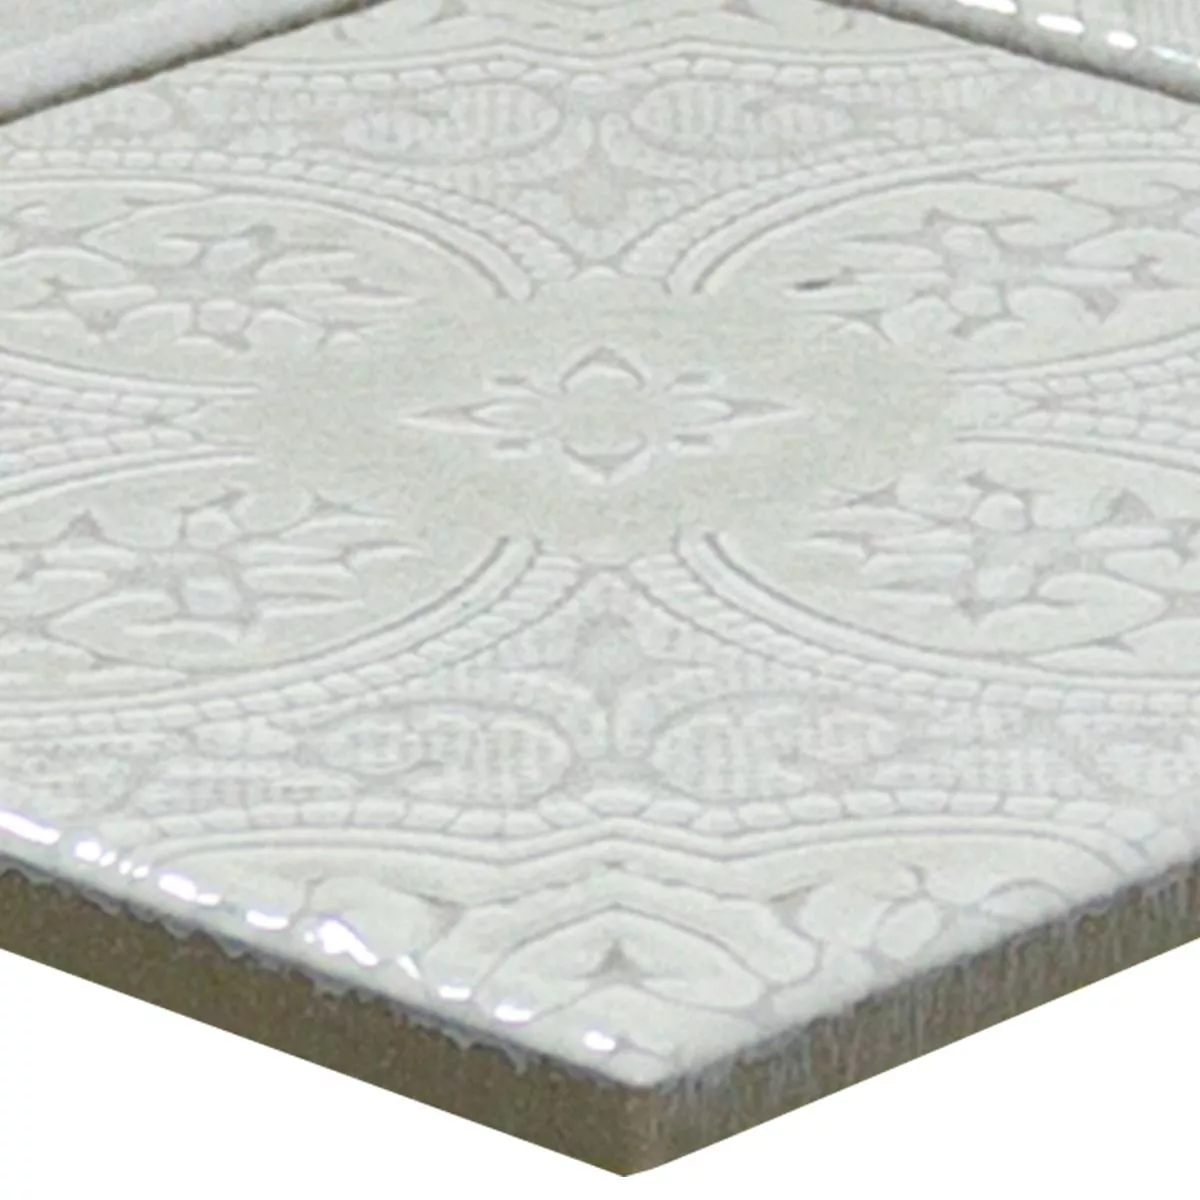 Muster von Keramik Mosaik Fliesen Rivabella Relief Grau